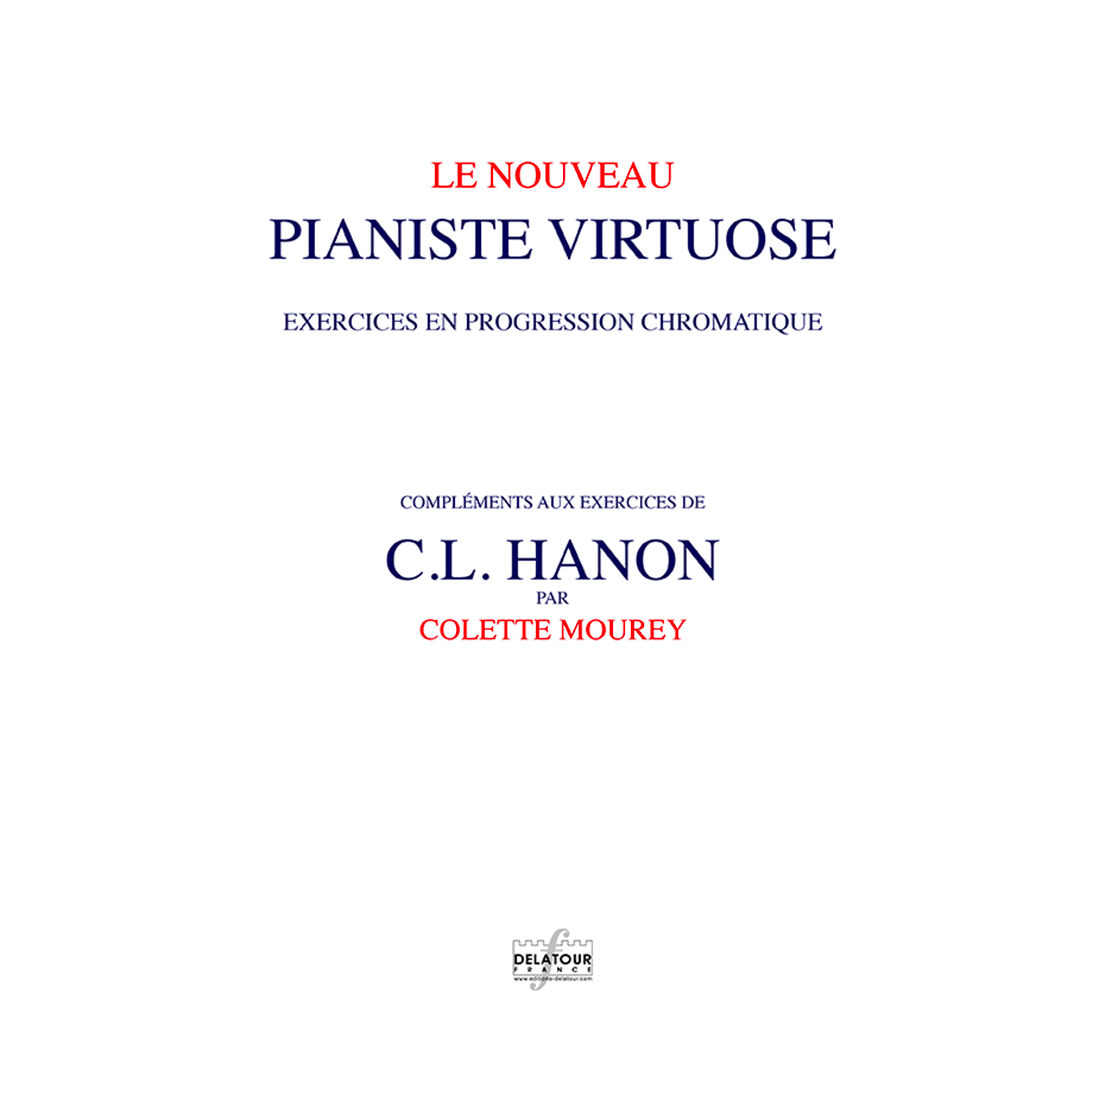 Le nouveau pianiste virtuose - Compléments par Colette Mourey